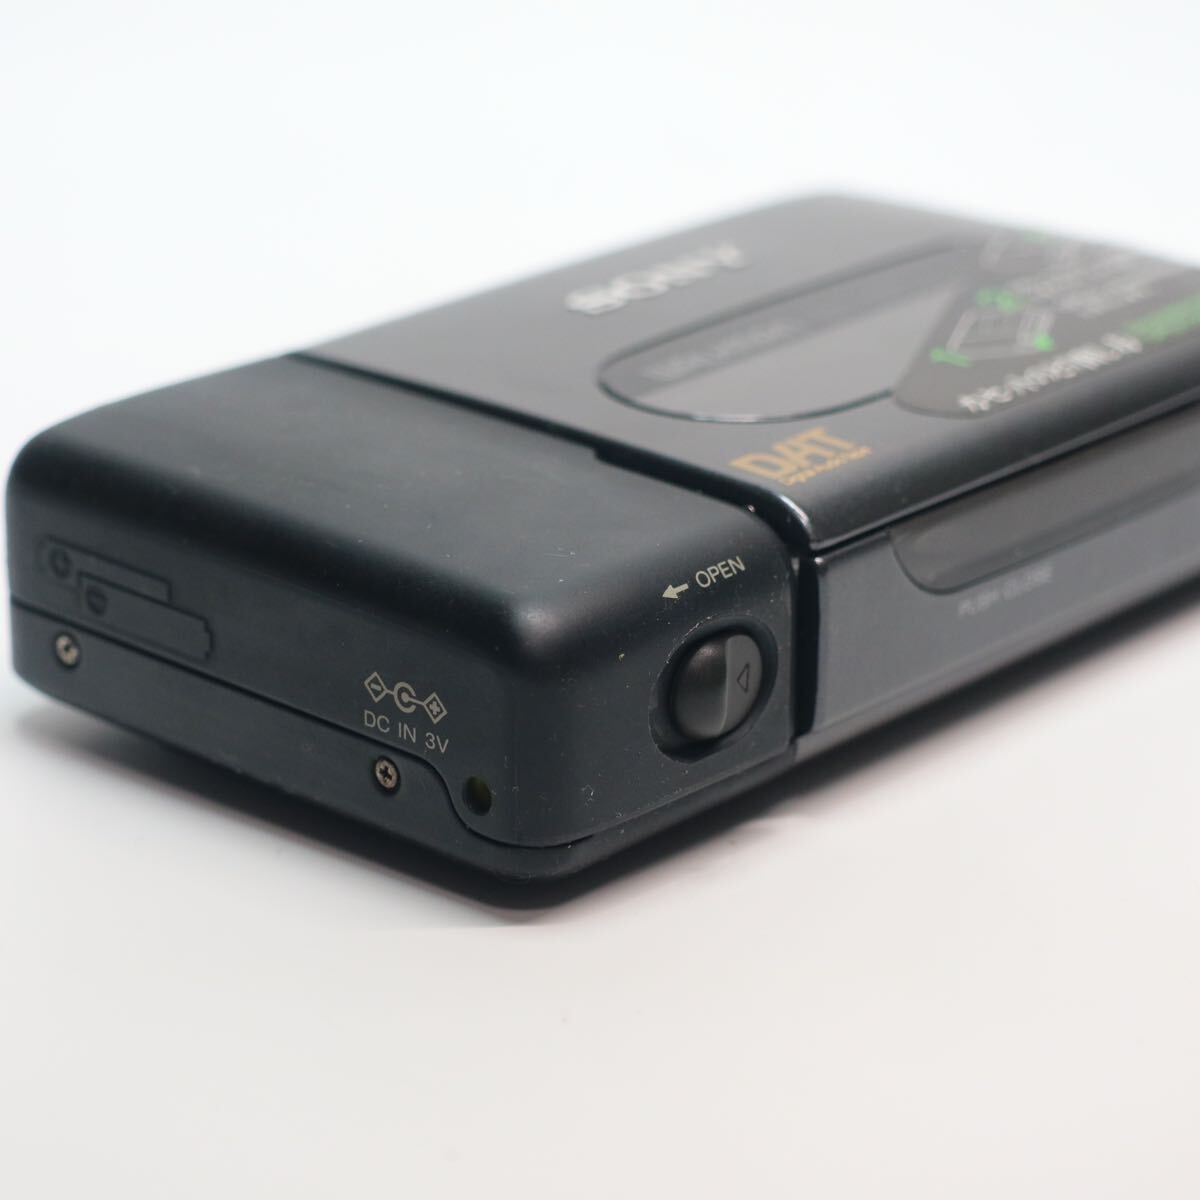 14) SONY DAT WALKMAN WMD-DT1 Sony dato Walkman работоспособность не проверялась батарейка крышка повреждение 